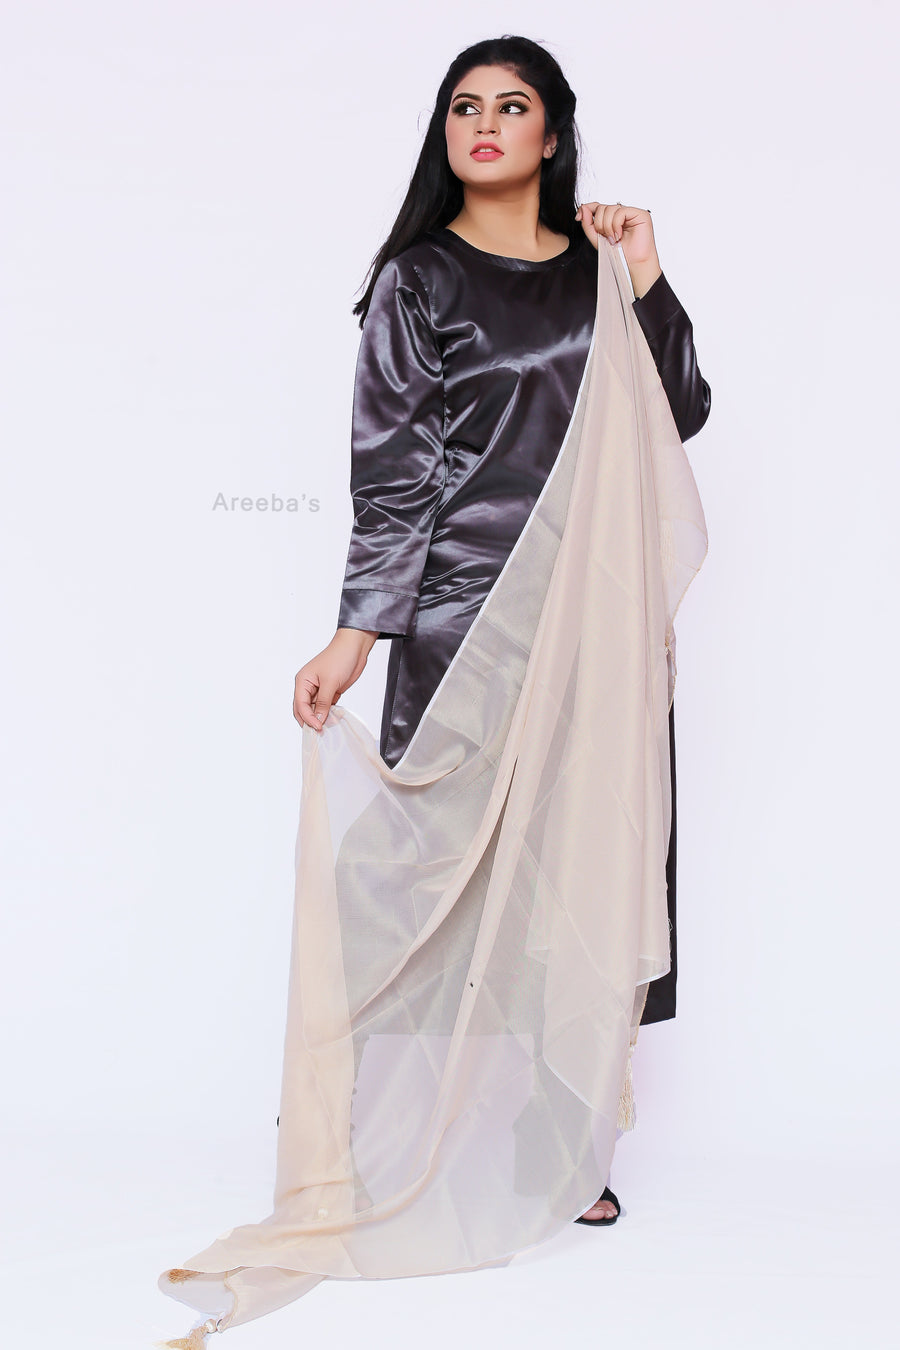 Dupatta 52- Areeba's Couture